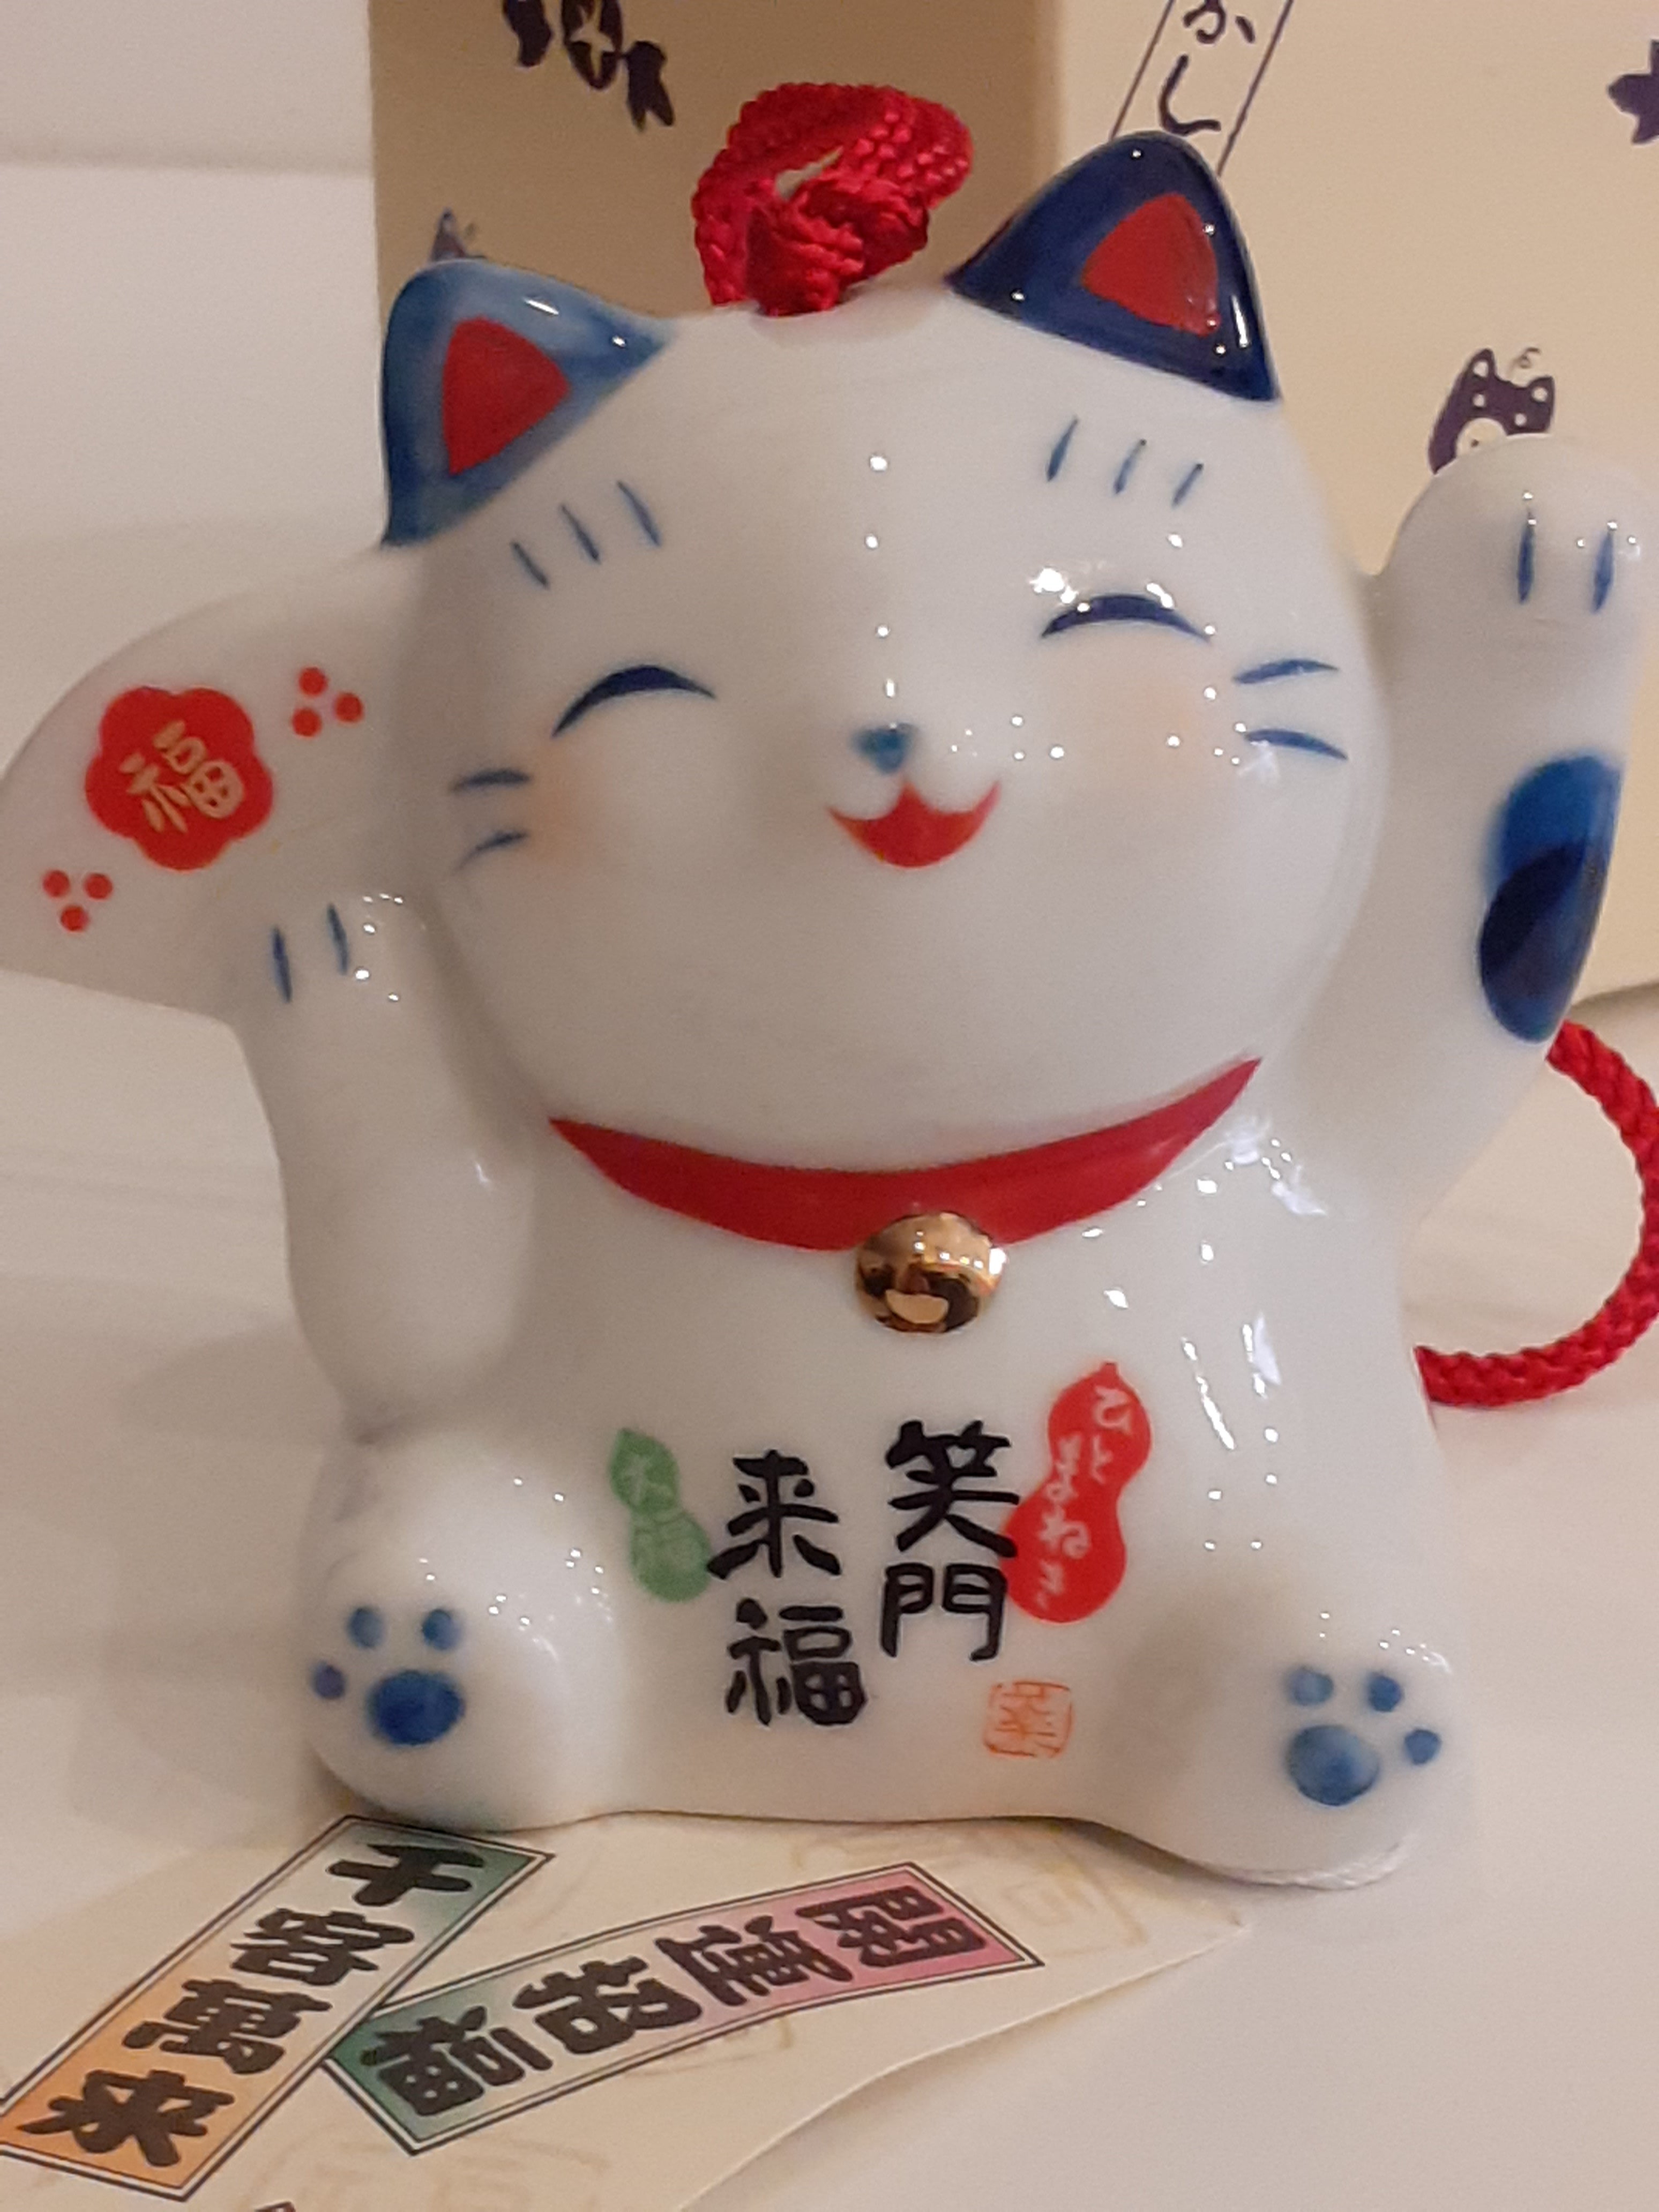 Fuurin in ceramica "Maneki Neko"